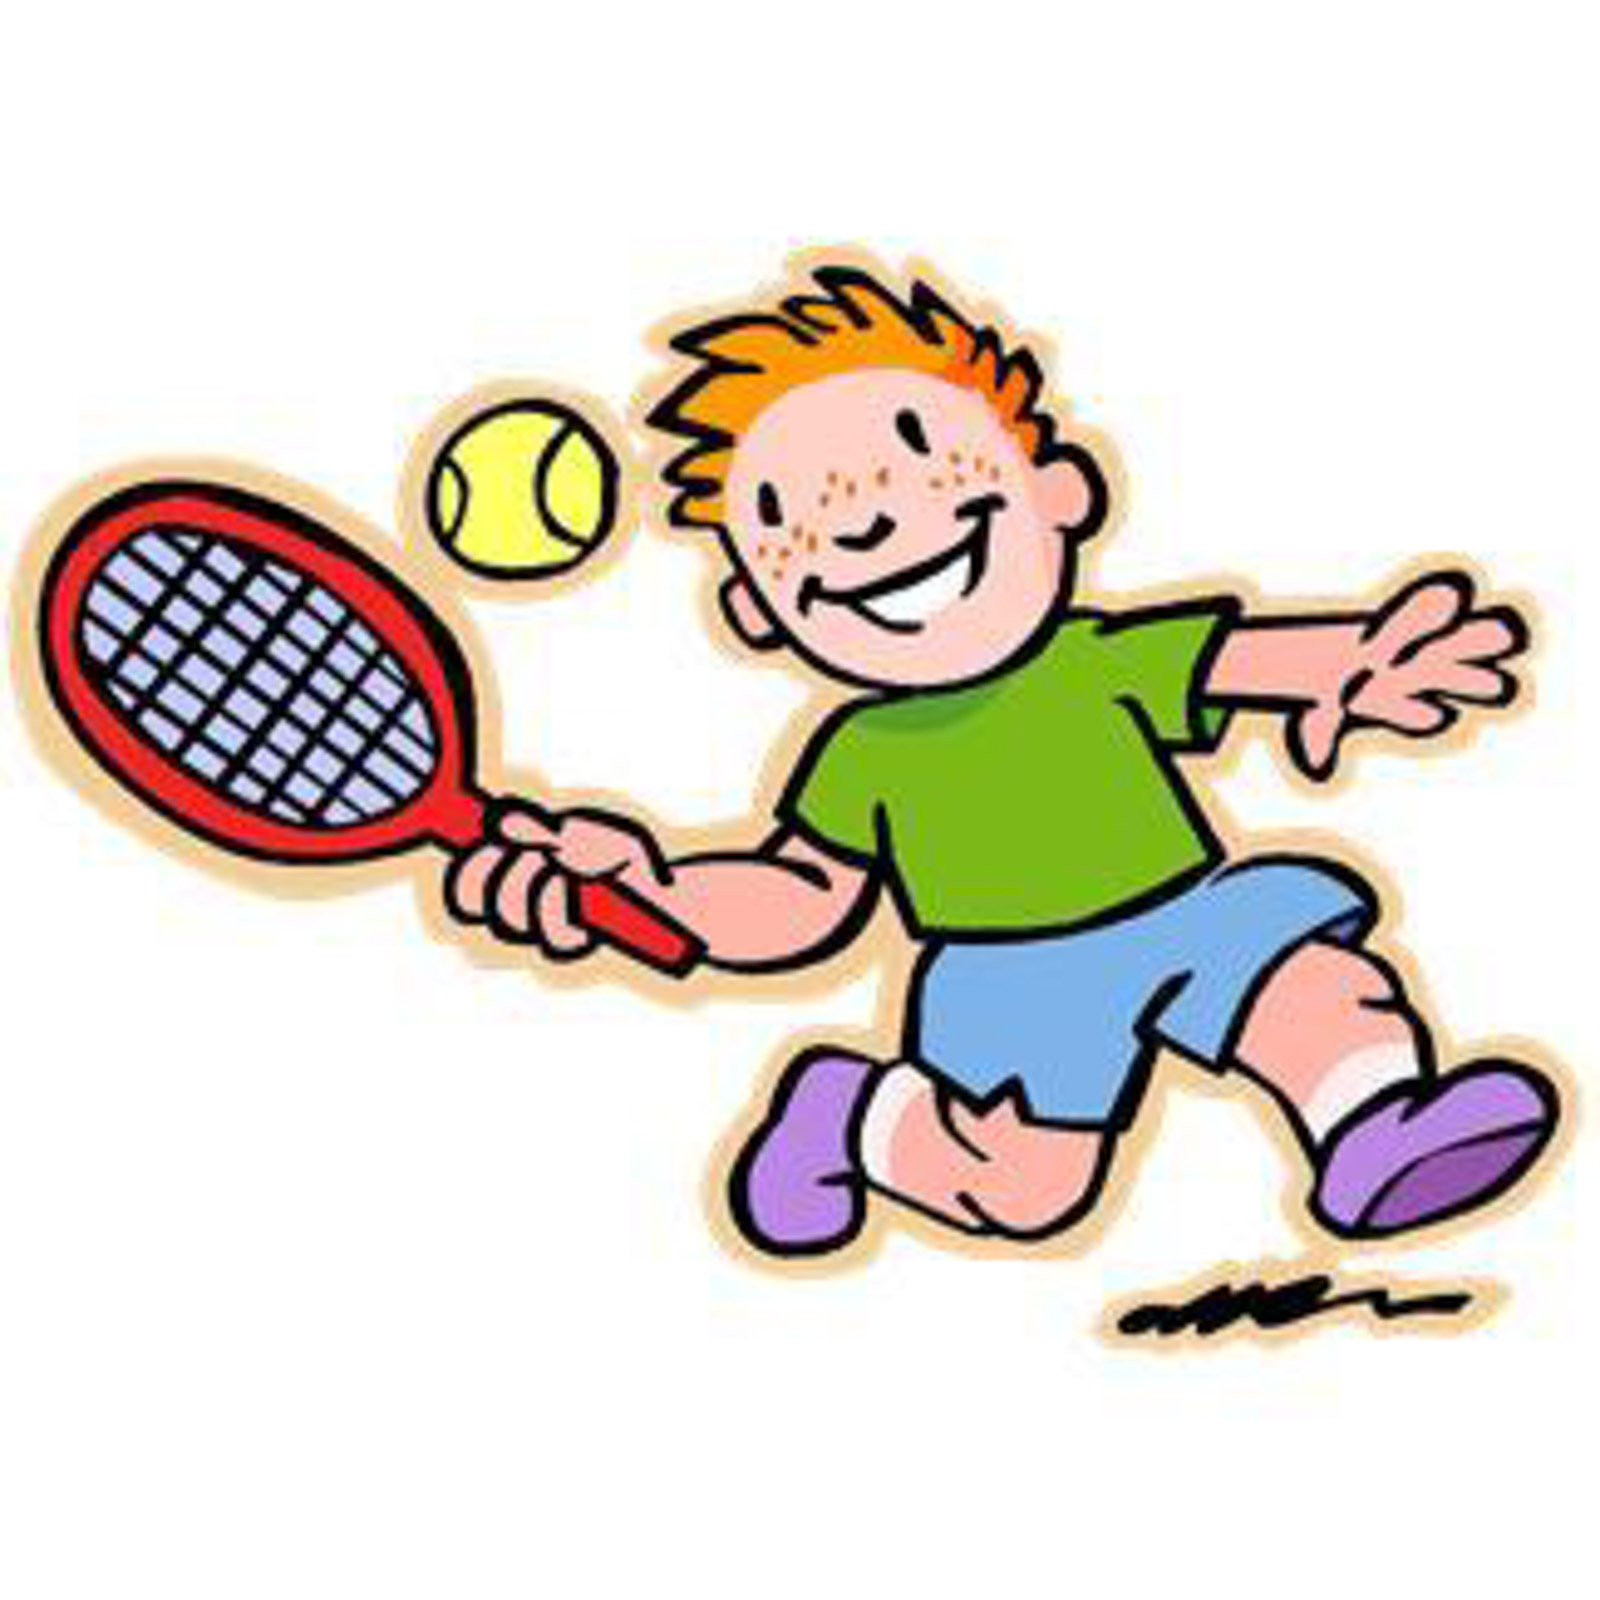 Tennis macht Spaß - beim TB Beinstein!